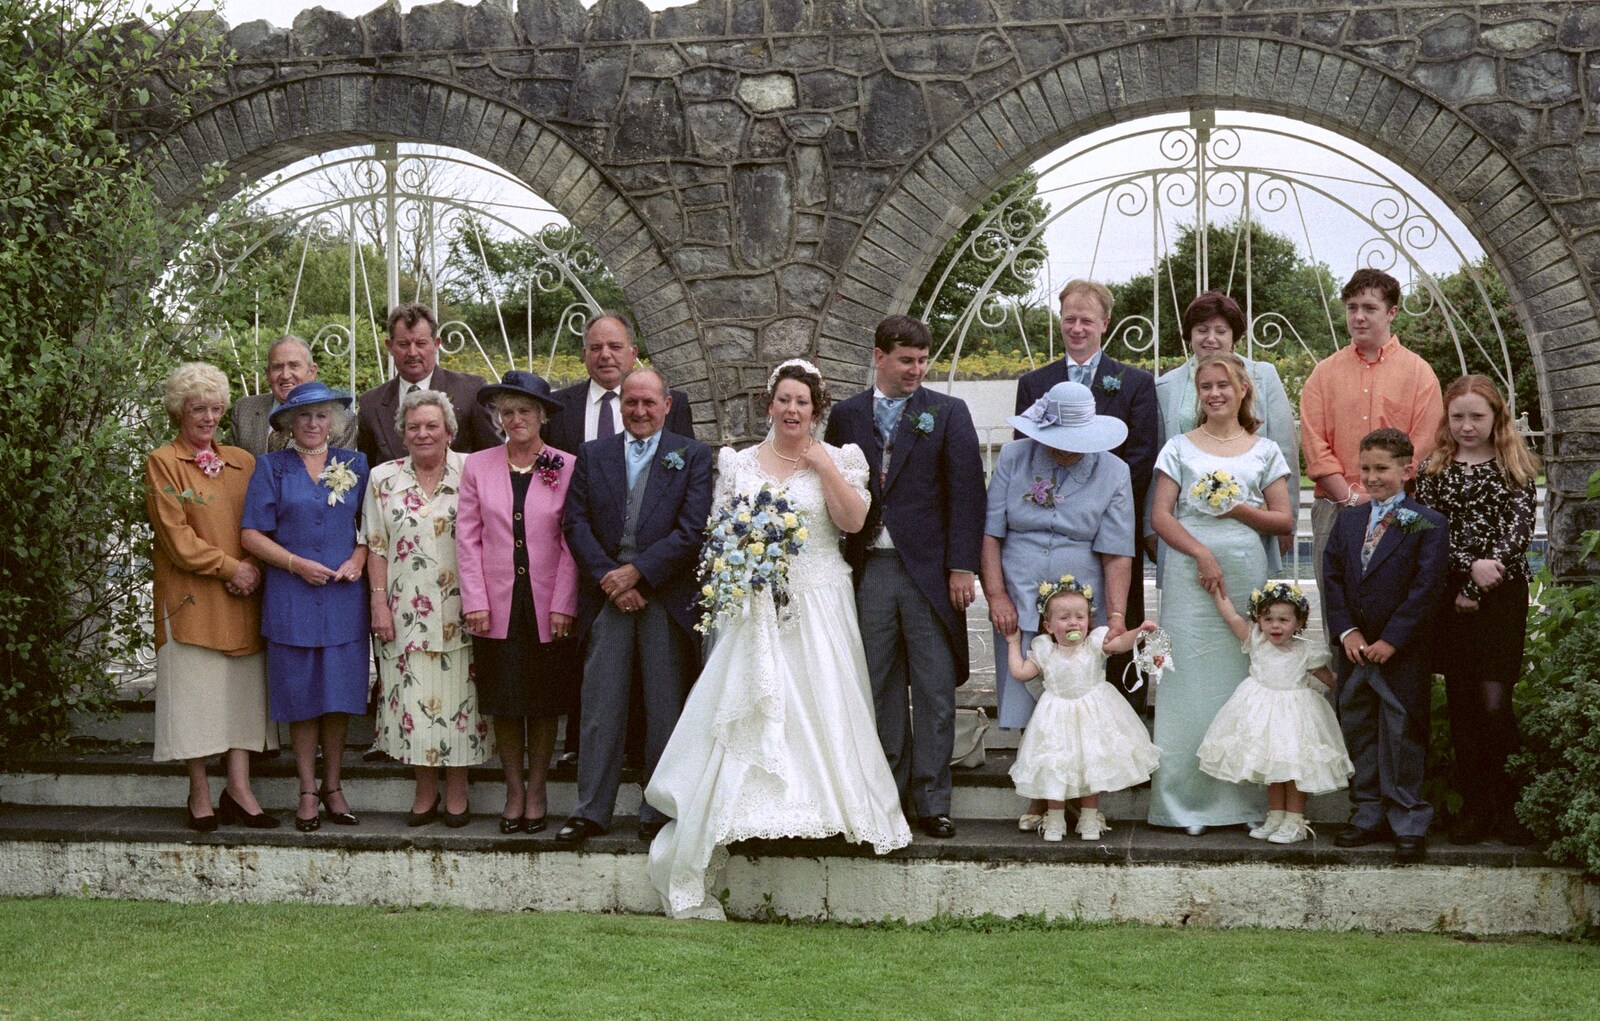 Riki's Wedding, Treboeth, Swansea - 7th May 1996: A wedding photo